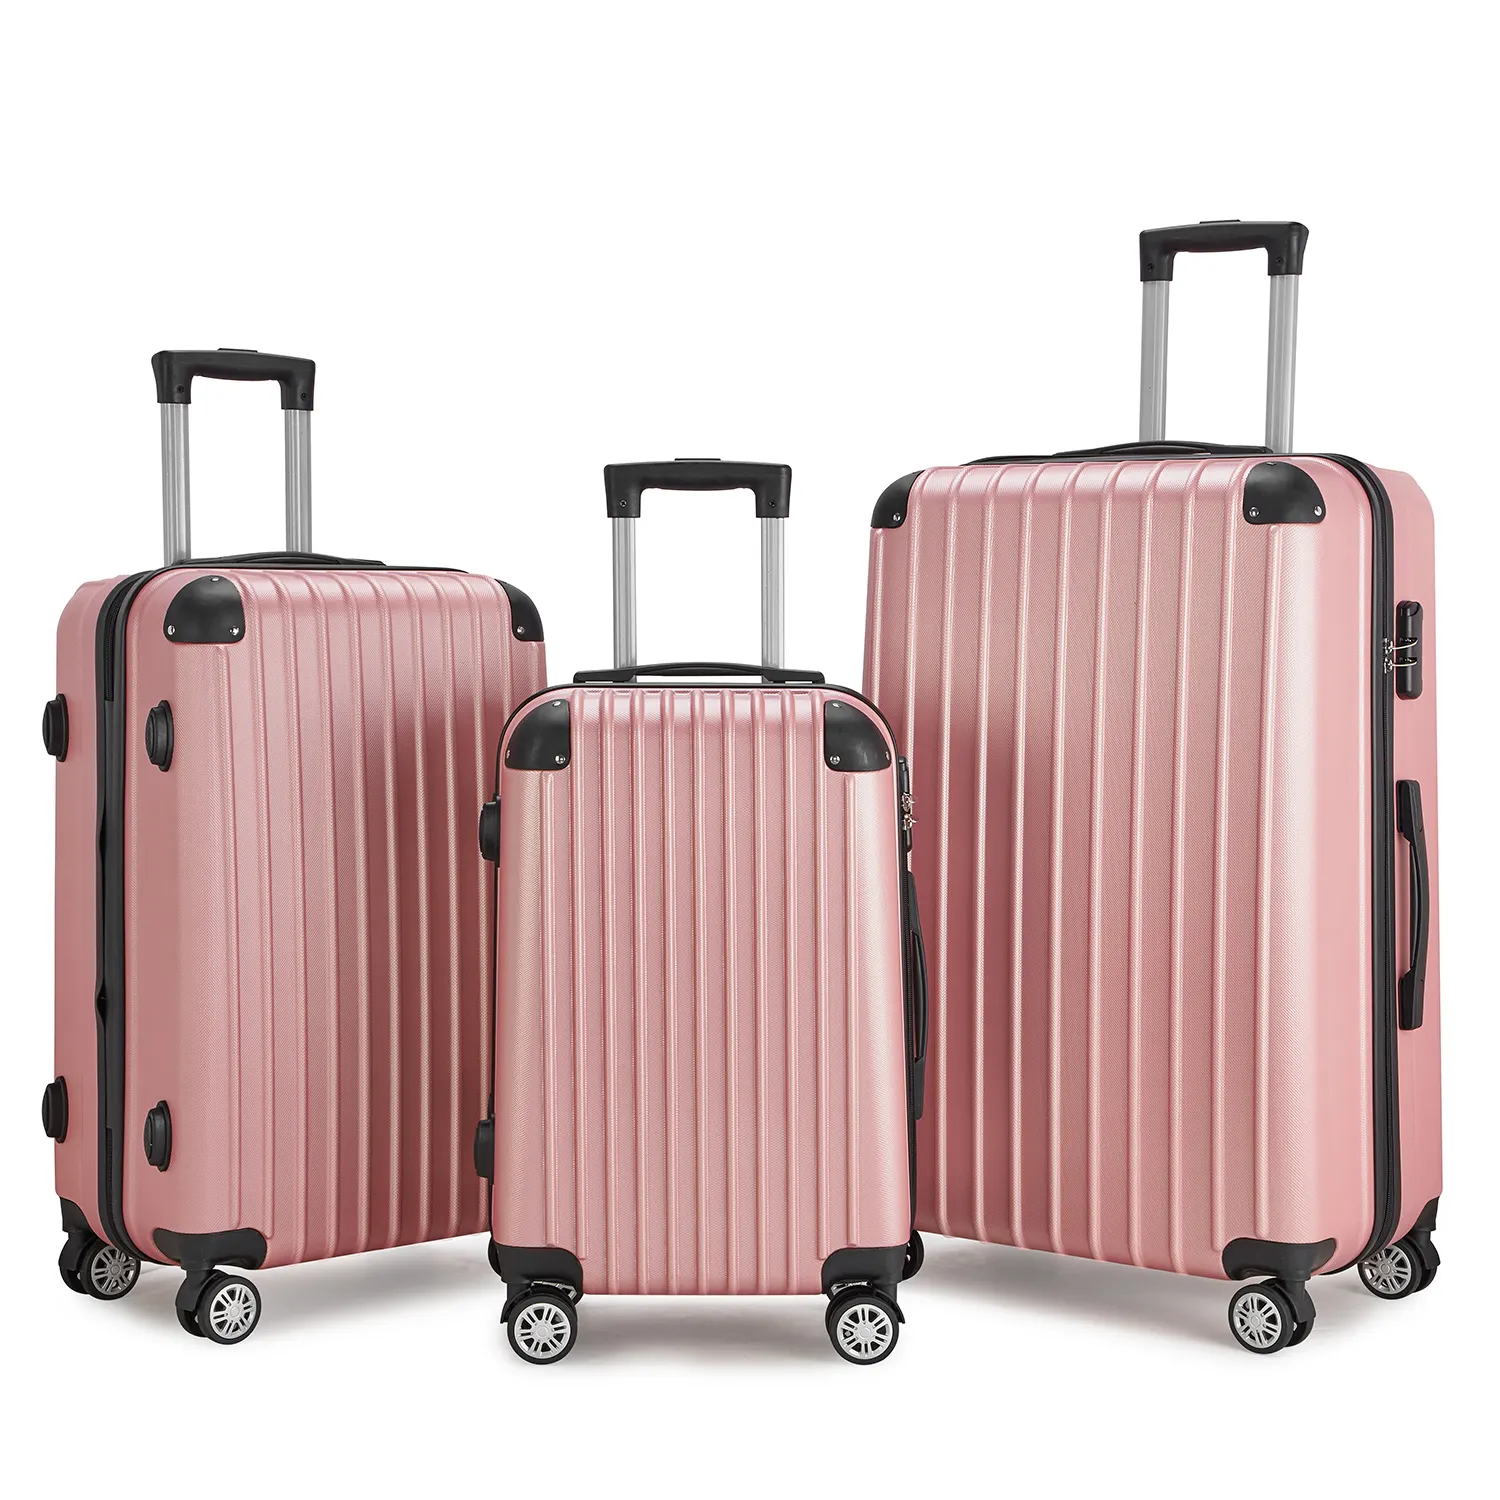 Ucuz toptan Abs seyahat arabası bagaj setleri bavul seyahat tekerlekli çantalar 3 adet bavul fermuar bagaj taşımak